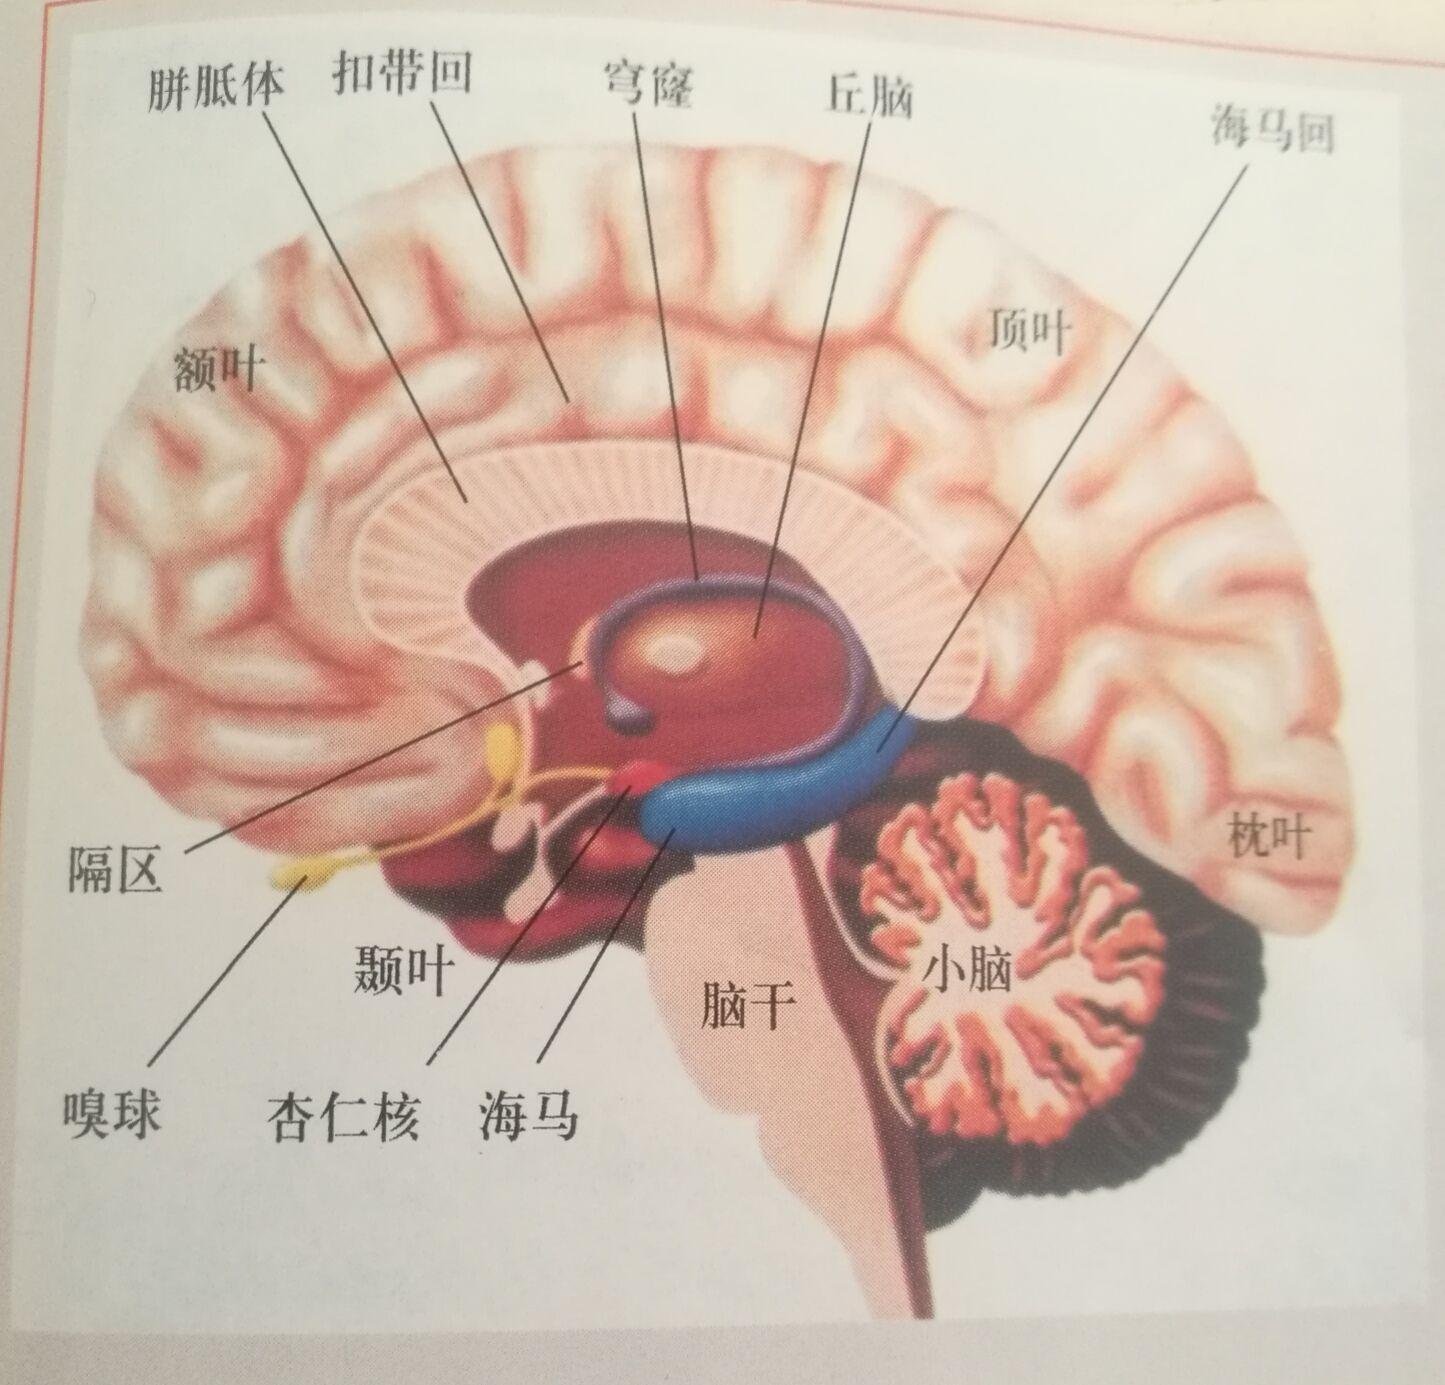 人体小脑结构图及功能图片